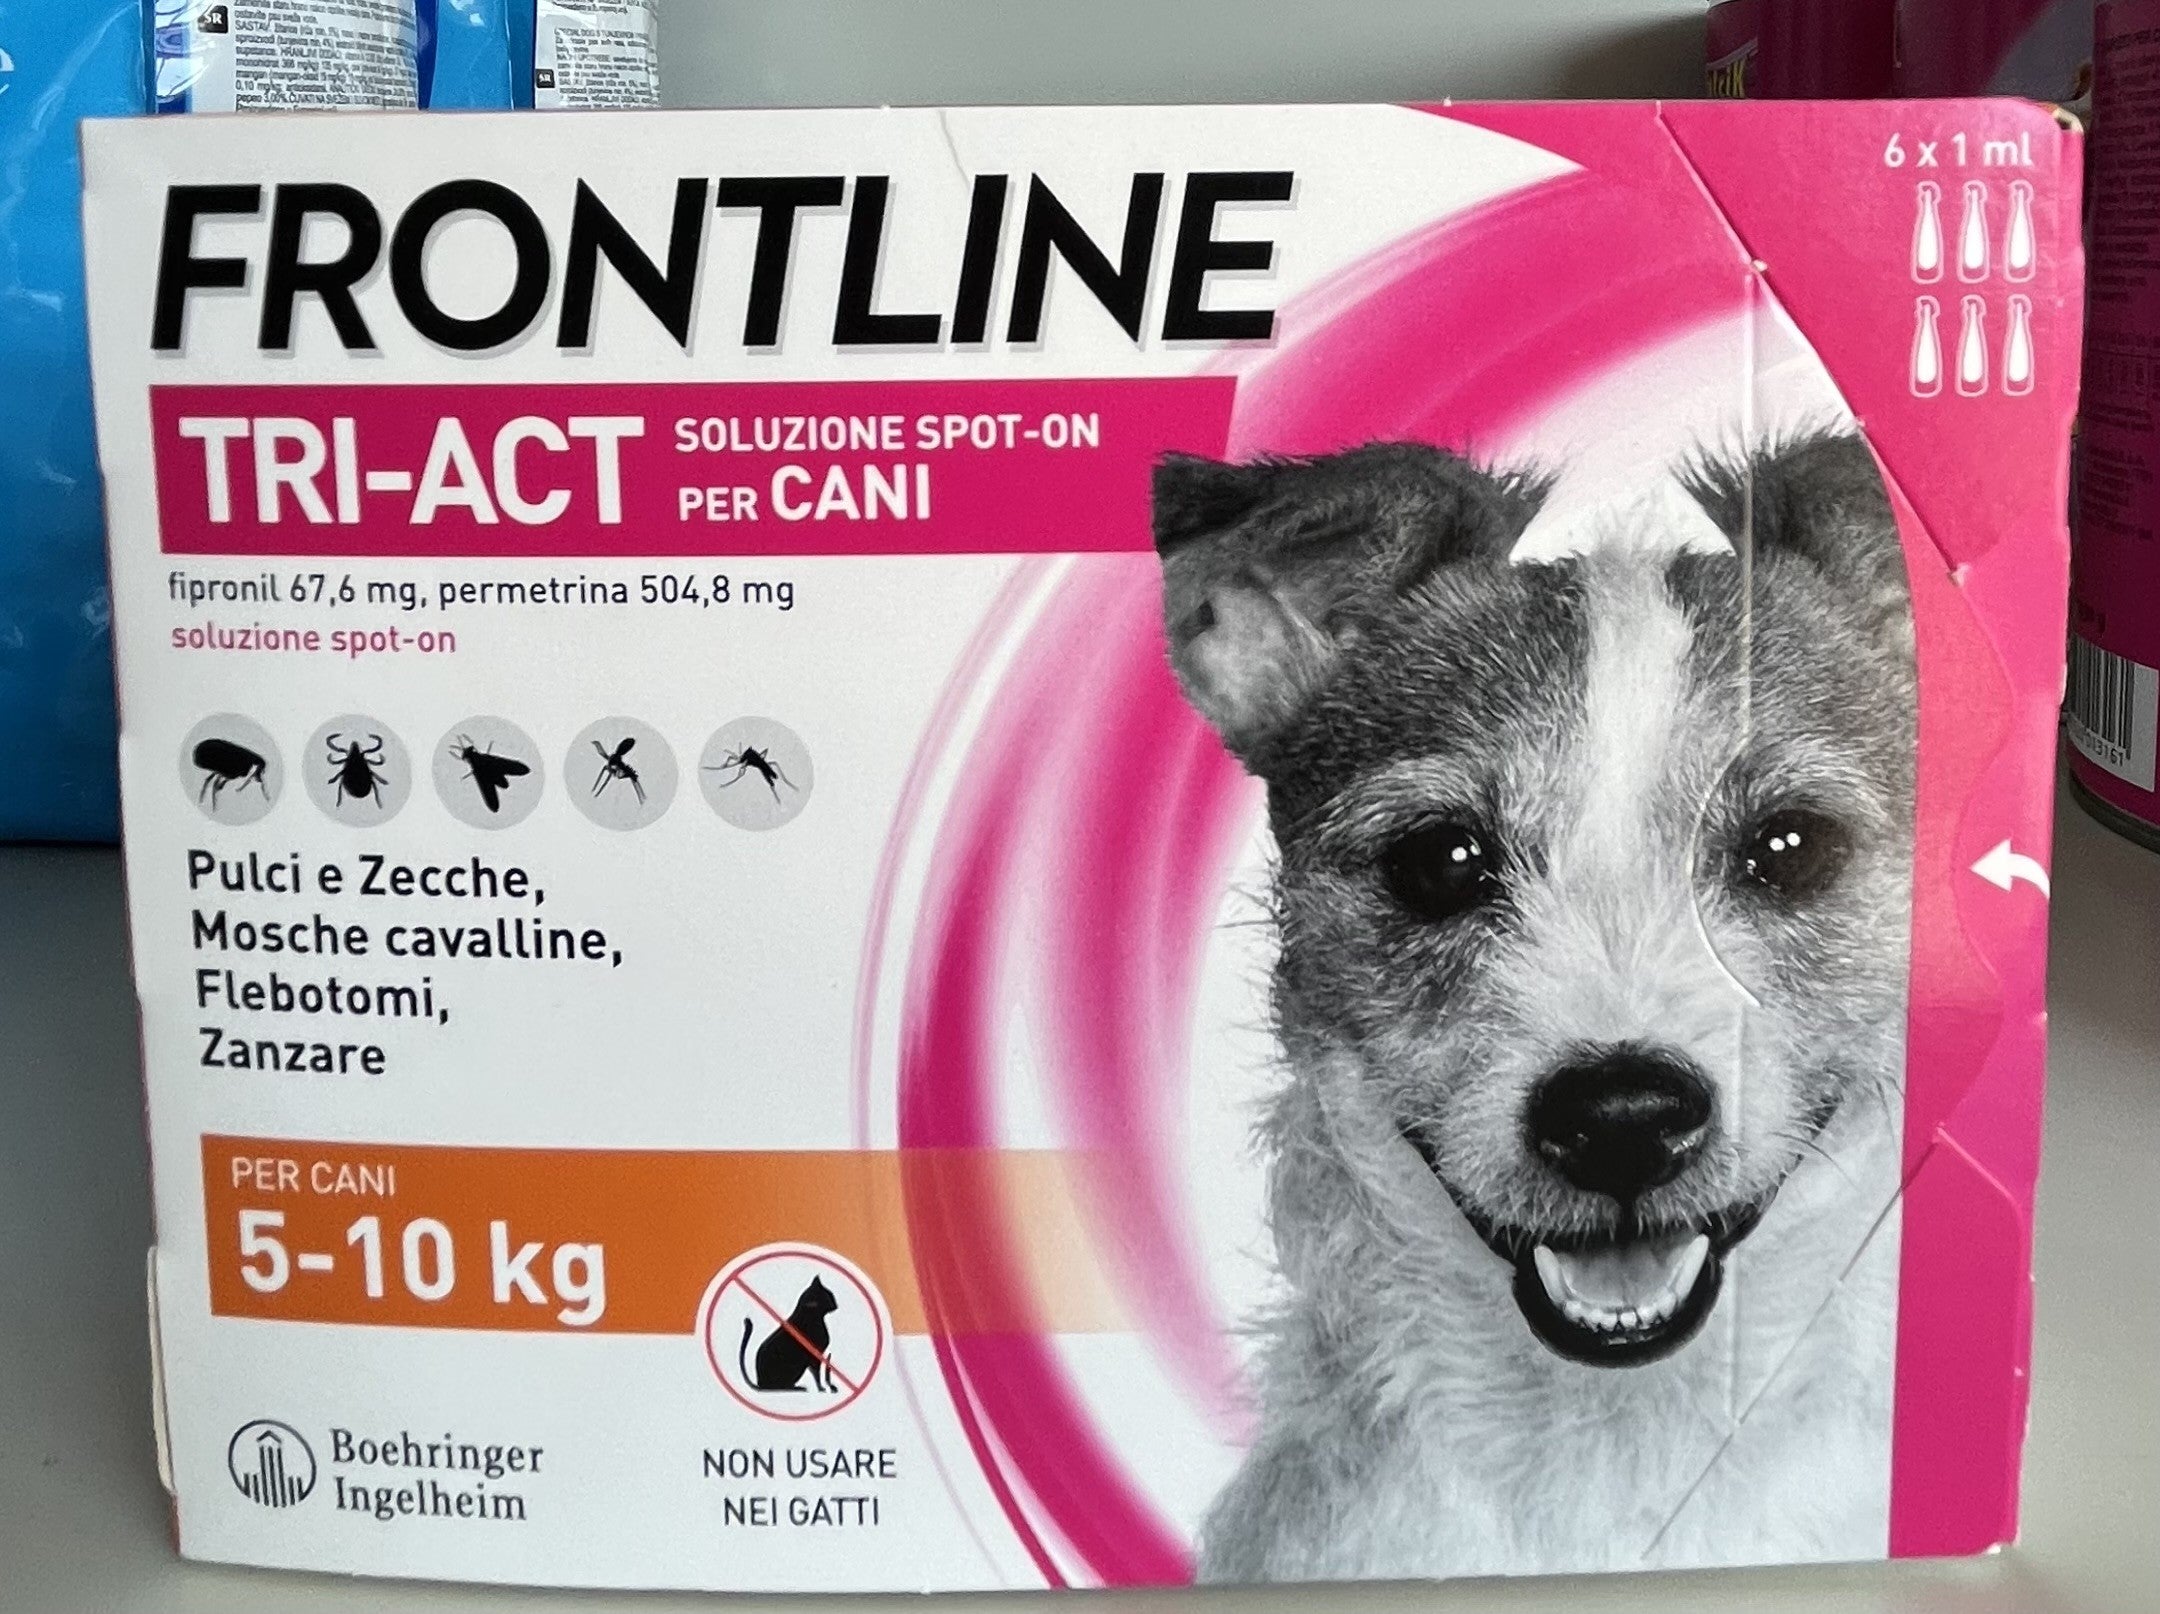 Pets - Frontline - TRI - ACT - Soluzione  - Spot - On - Cani - da 5 a 10 Kg - 6x1 - Antiparassitario